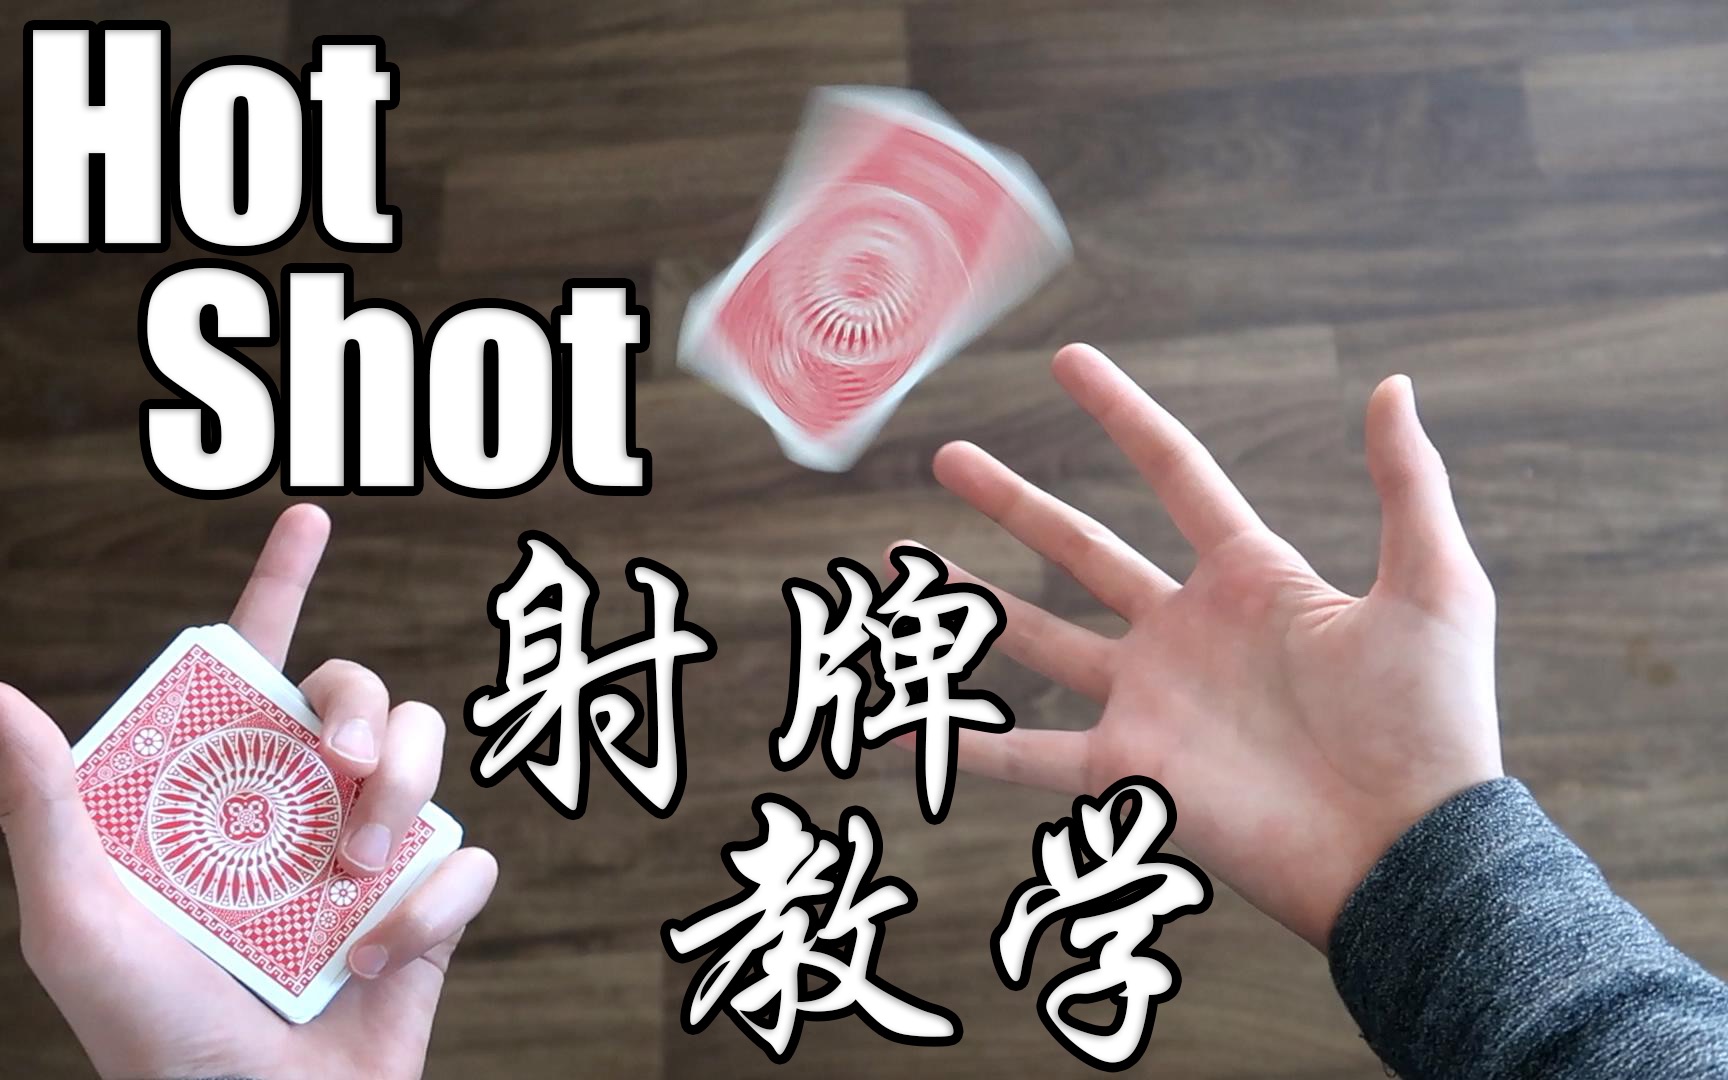 【飞韬的花切教学】hot shot射牌 | 超级简单又帅气的射牌动作!